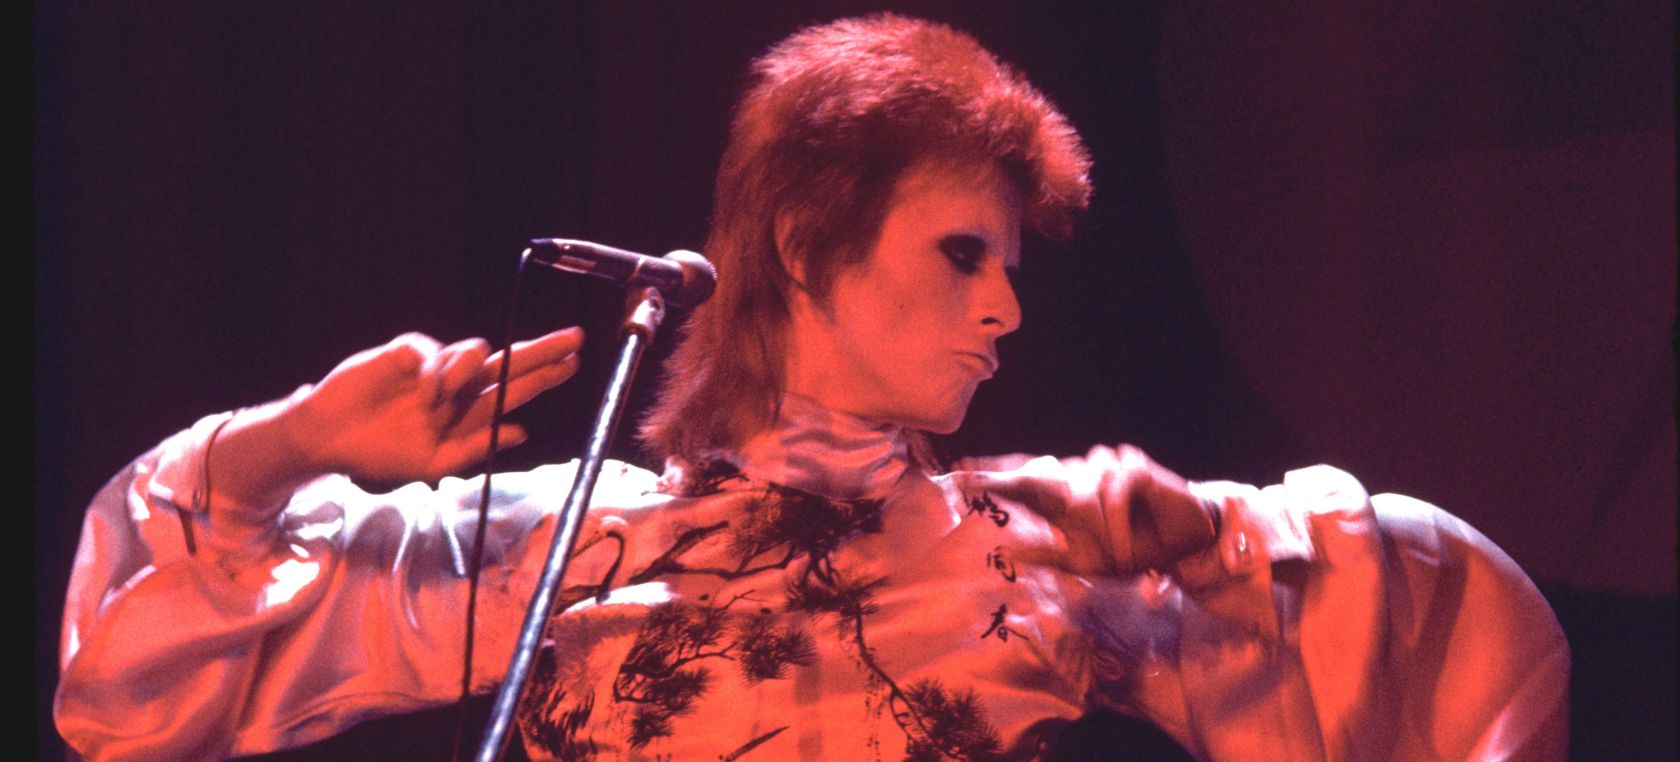 Escucha la nueva versión inédita de 'Starman' de David Bowie